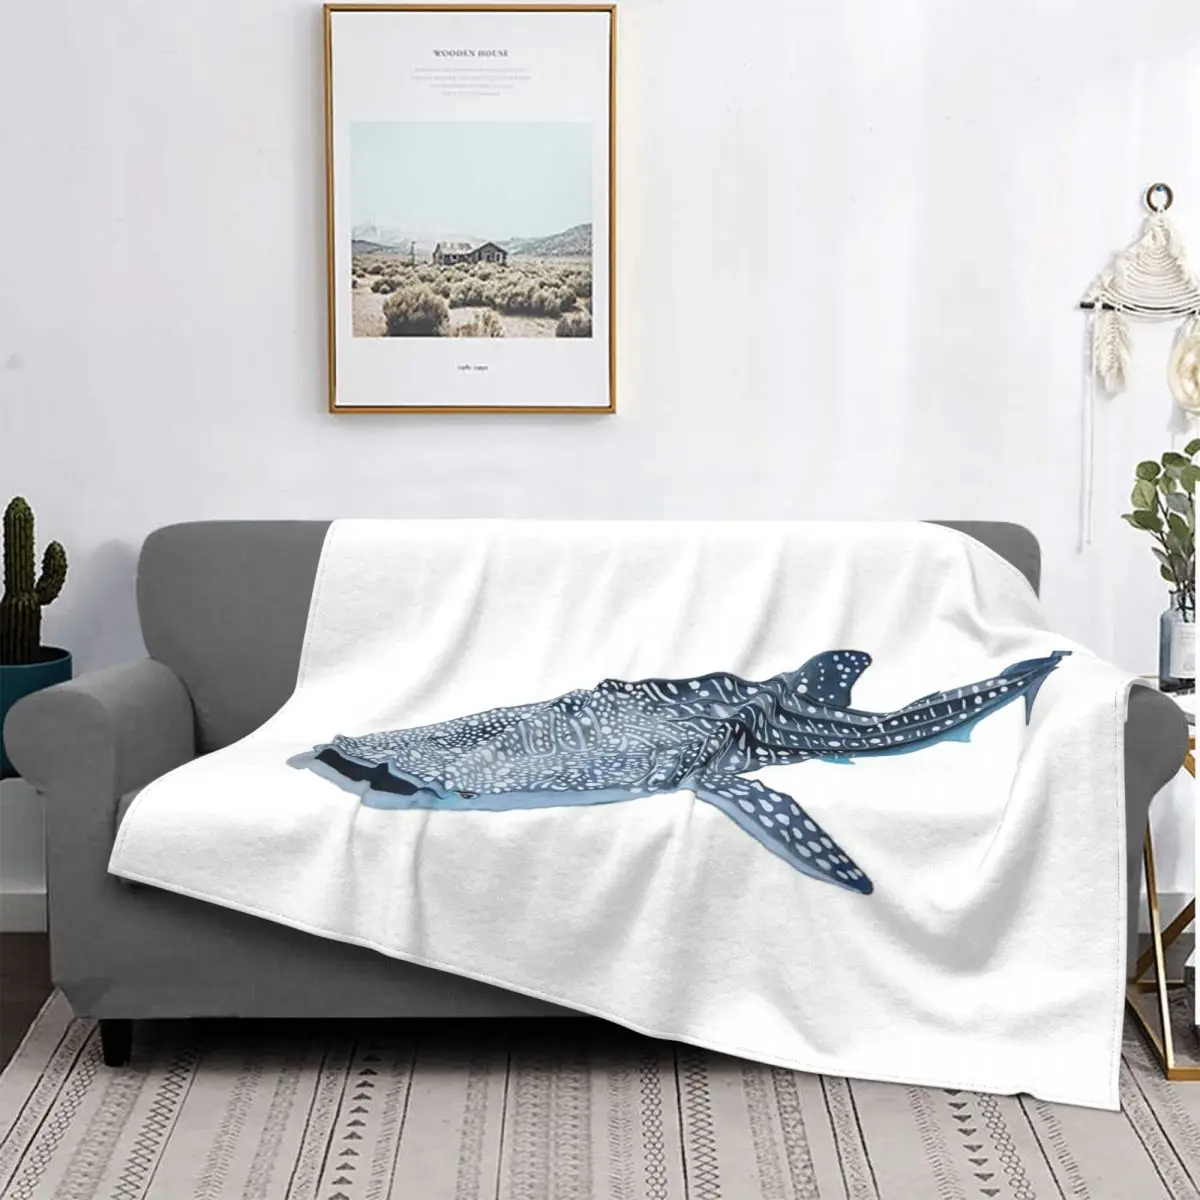 

Китовая акула 3 одеяла покрывало на кровать пляжное пушистое мягкое одеяло s с рисунком накидки на кровать из пушистой зимы